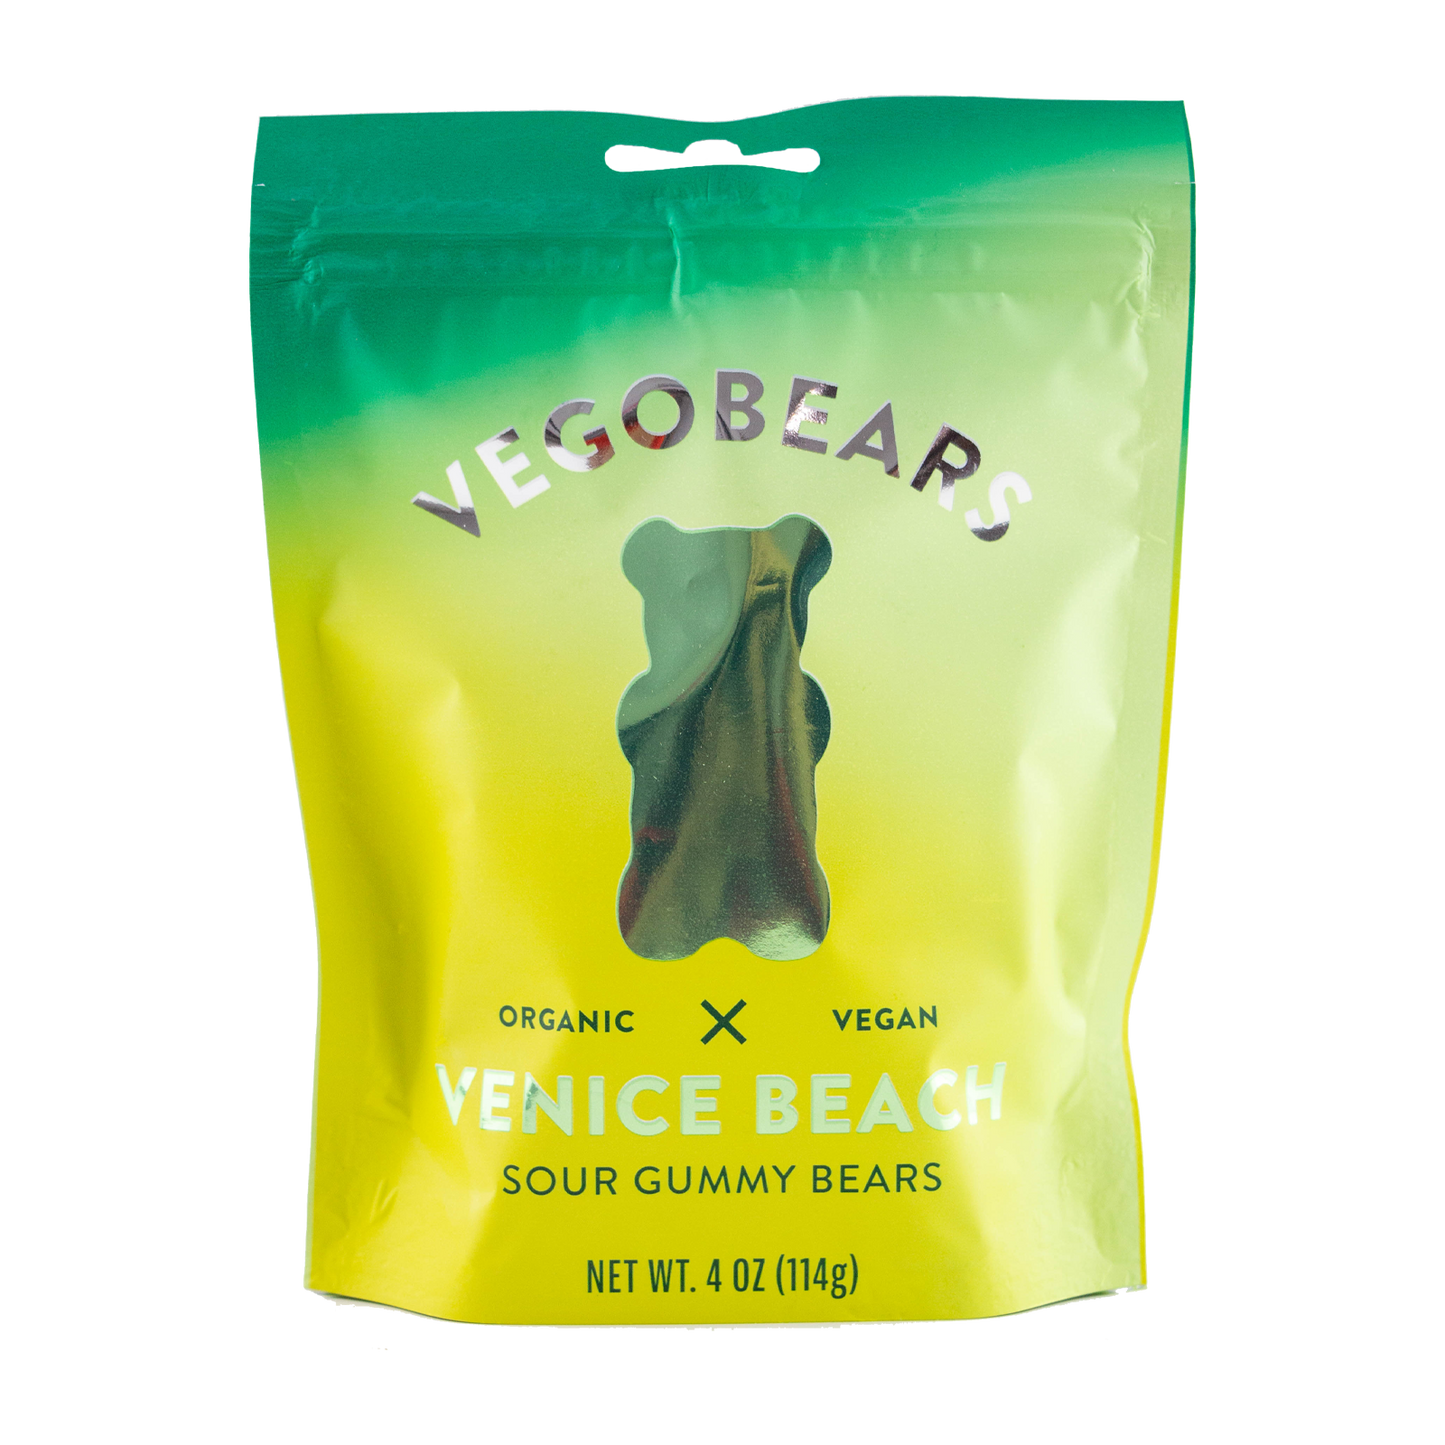 Vegobears - Venice Beach